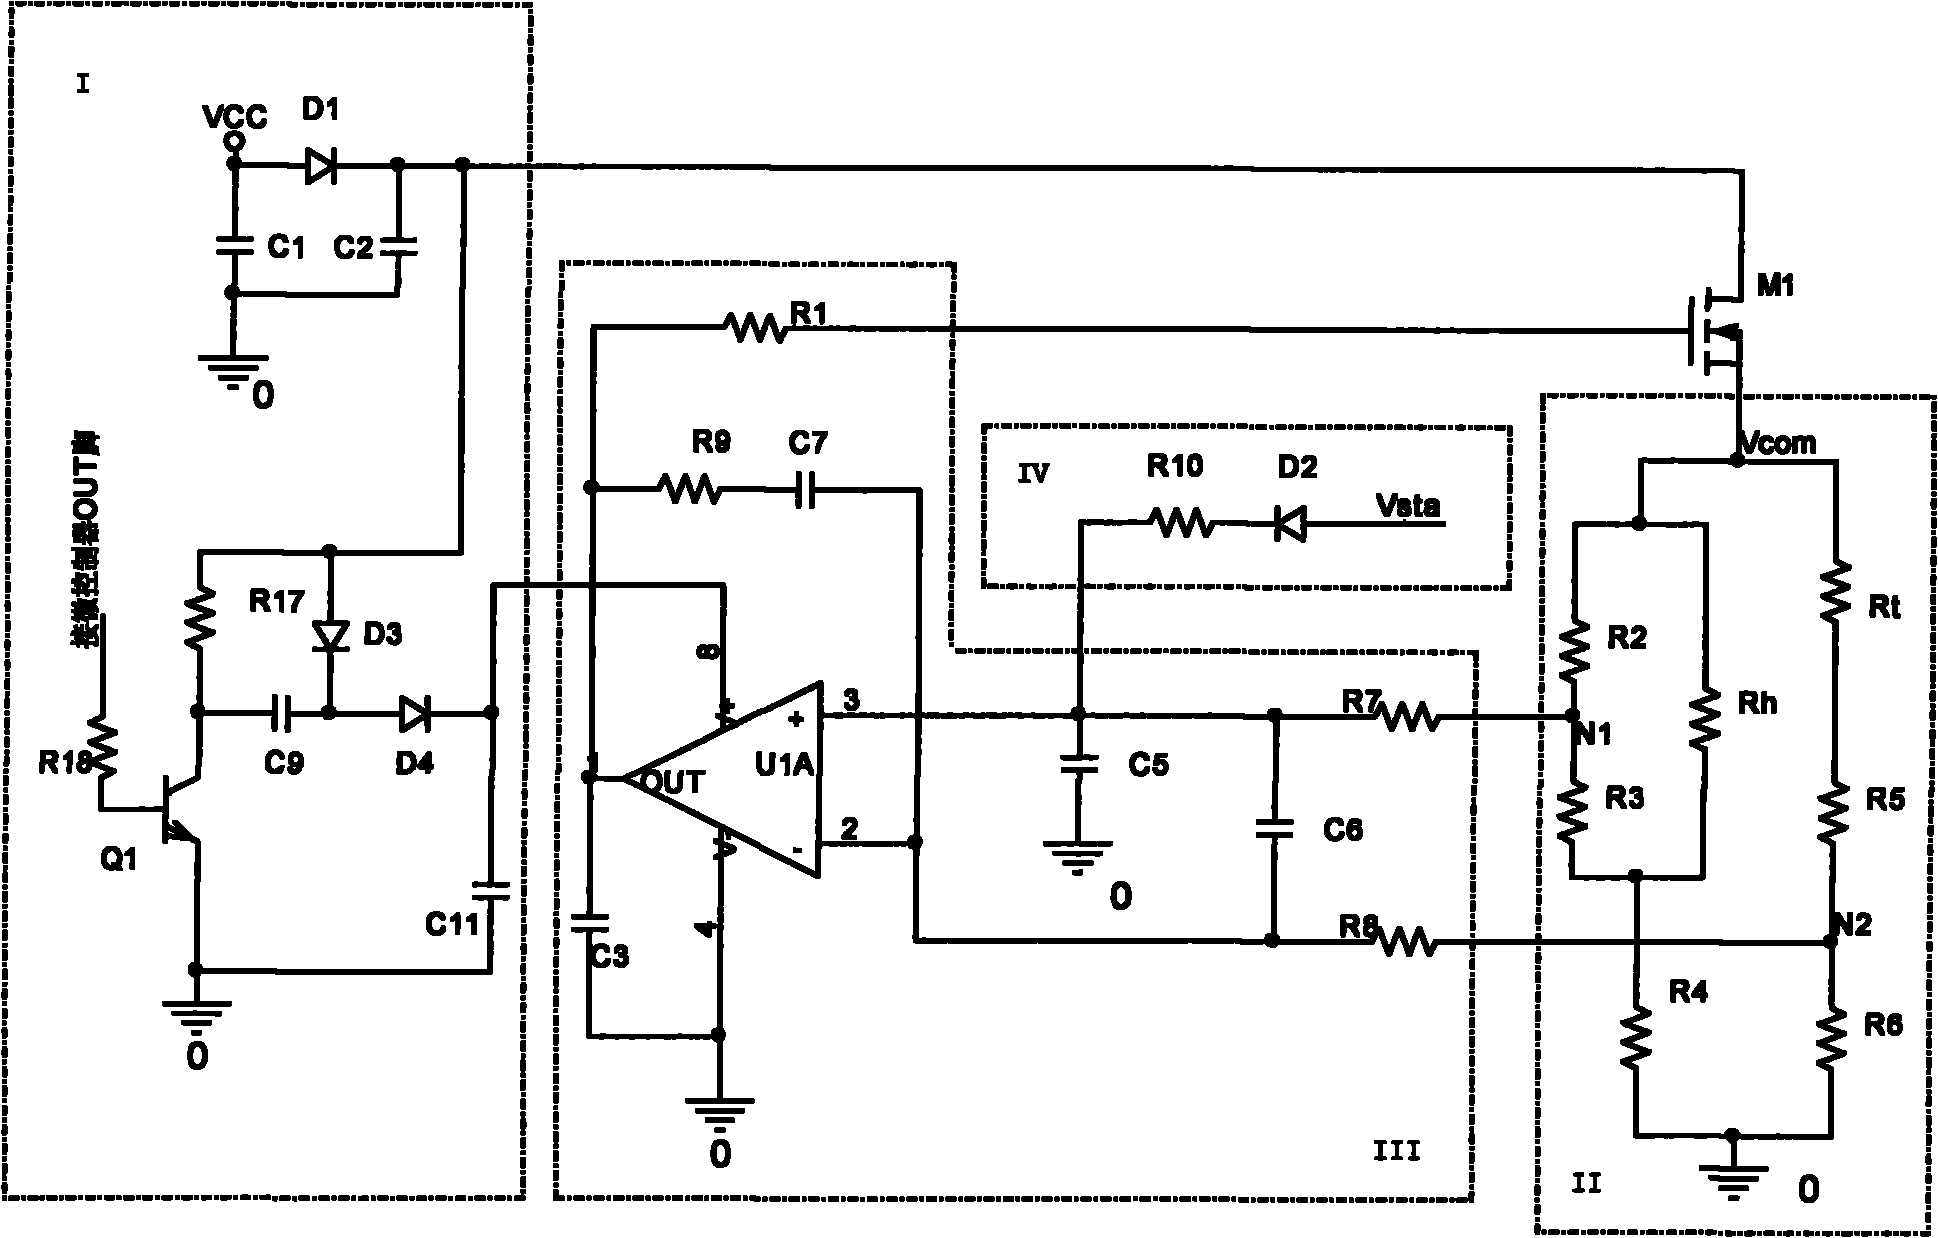 Thermal flow sensor